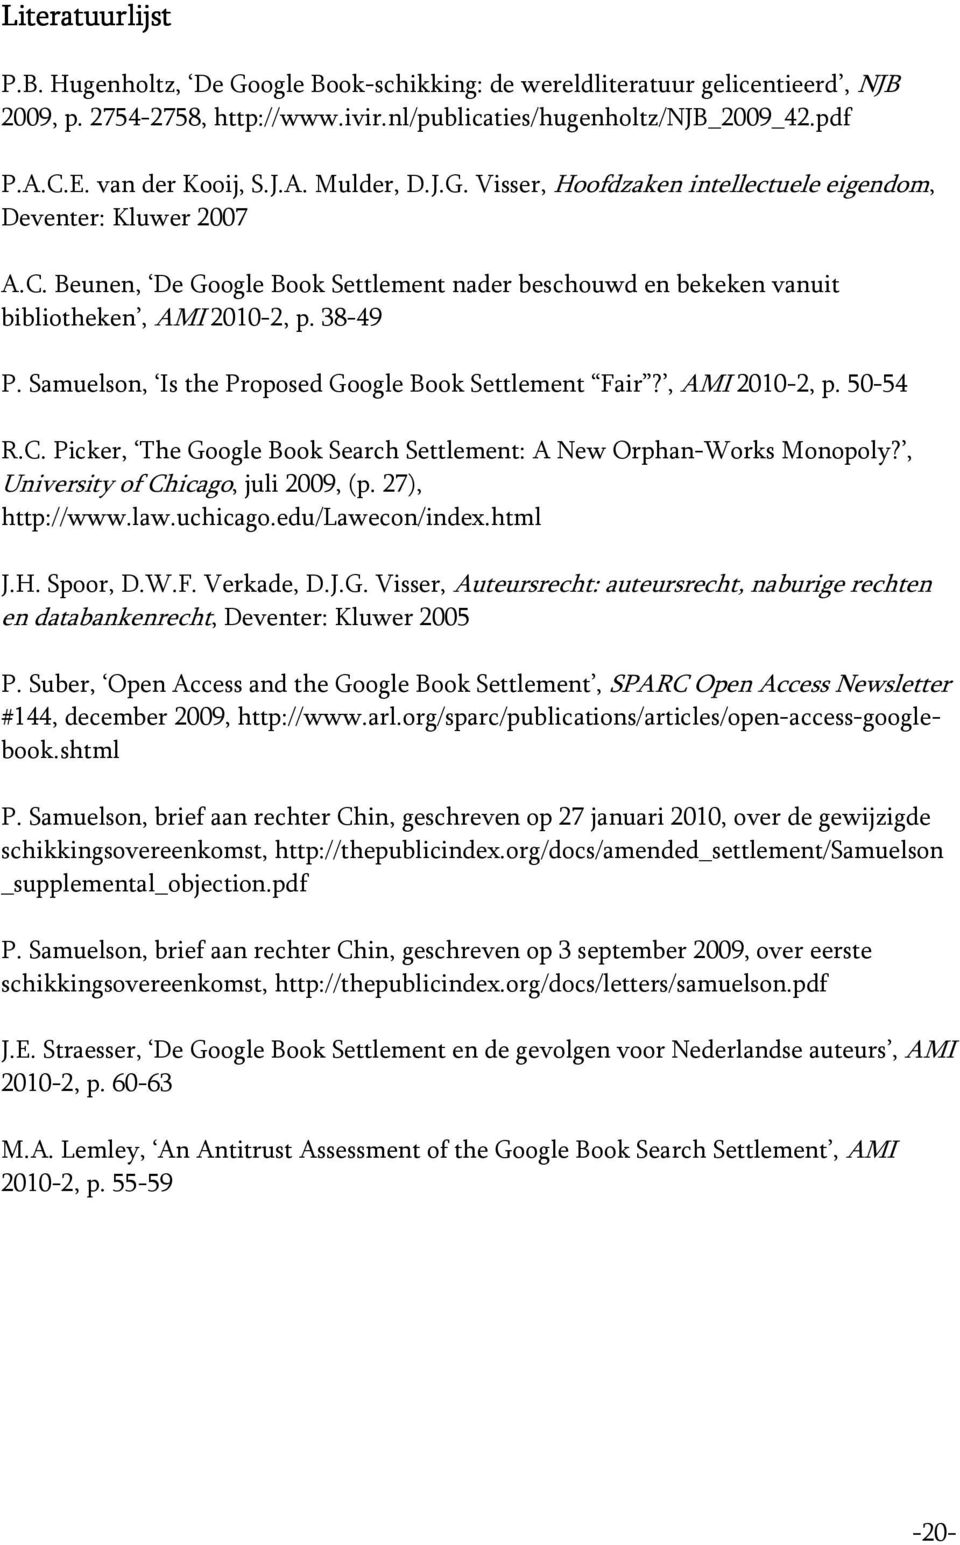 Beunen, De Google Book Settlement nader beschouwd en bekeken vanuit bibliotheken, AMI 2010-2, p. 38-49 P. Samuelson, Is the Proposed Google Book Settlement Fair?, AMI 2010-2, p. 50-54 R.C.